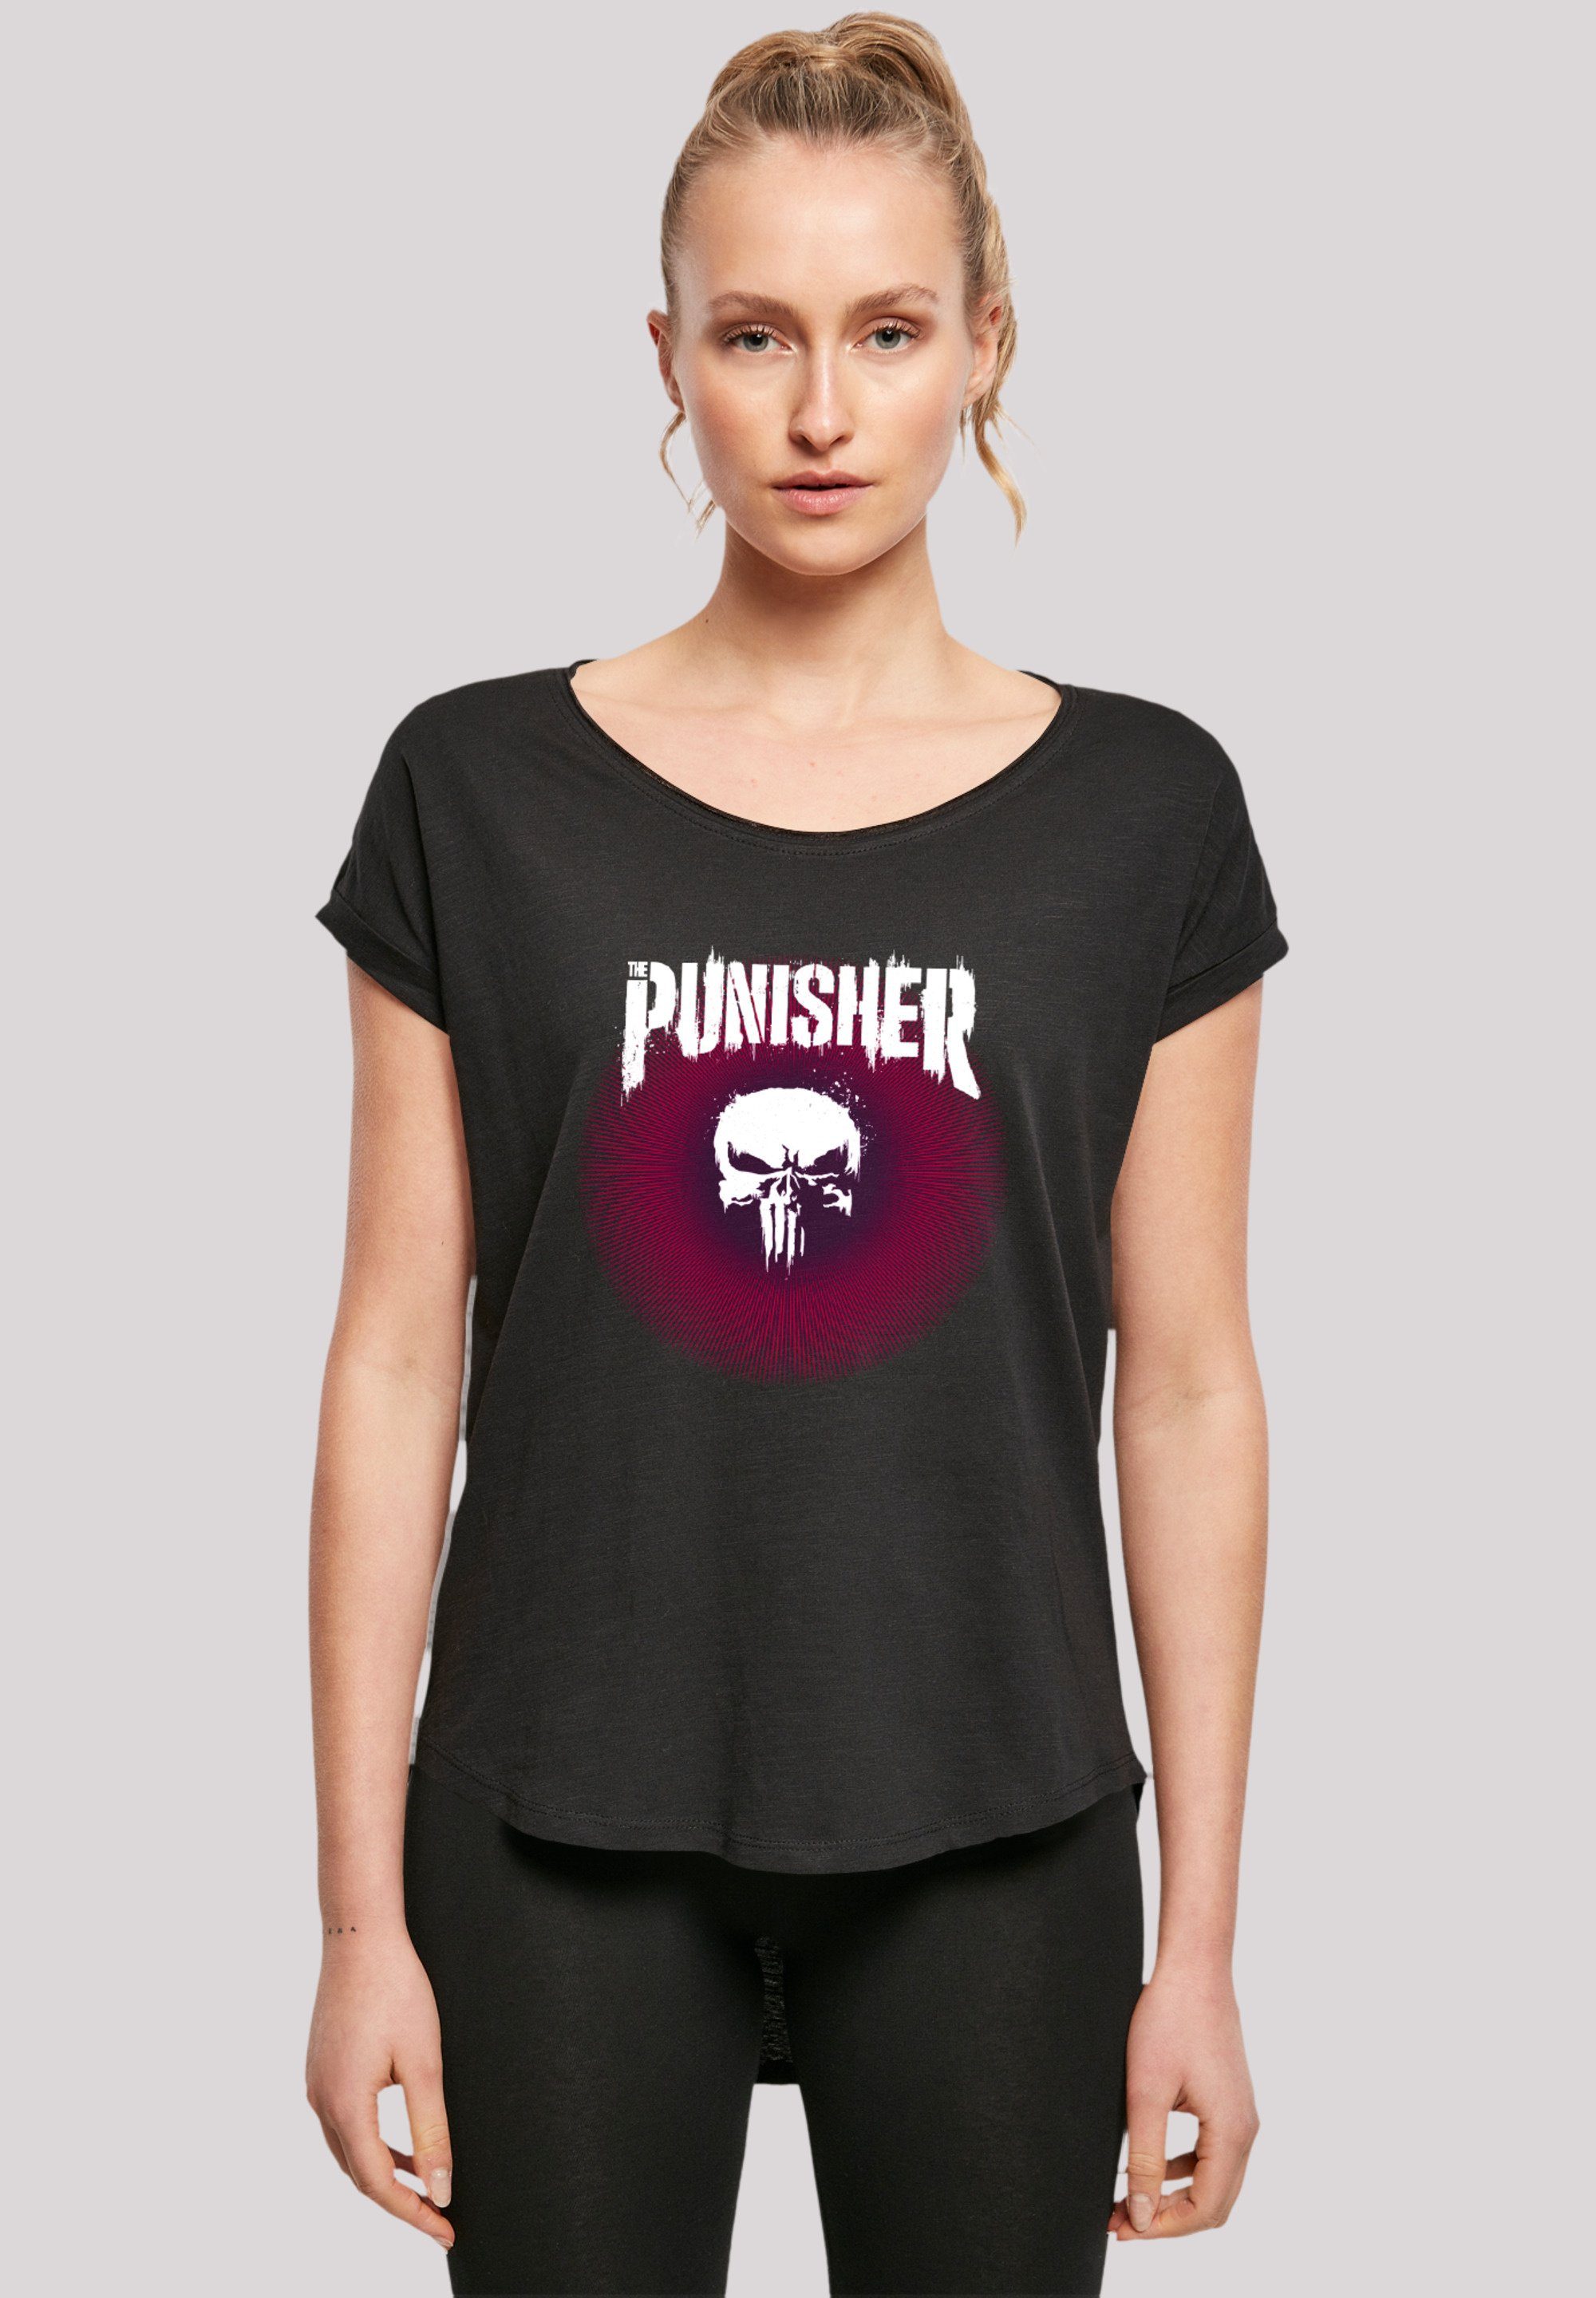 F4NT4STIC weicher Qualität, Marvel Warface Baumwollstoff T-Shirt Punisher hohem mit Tragekomfort Premium Psychedelic Sehr